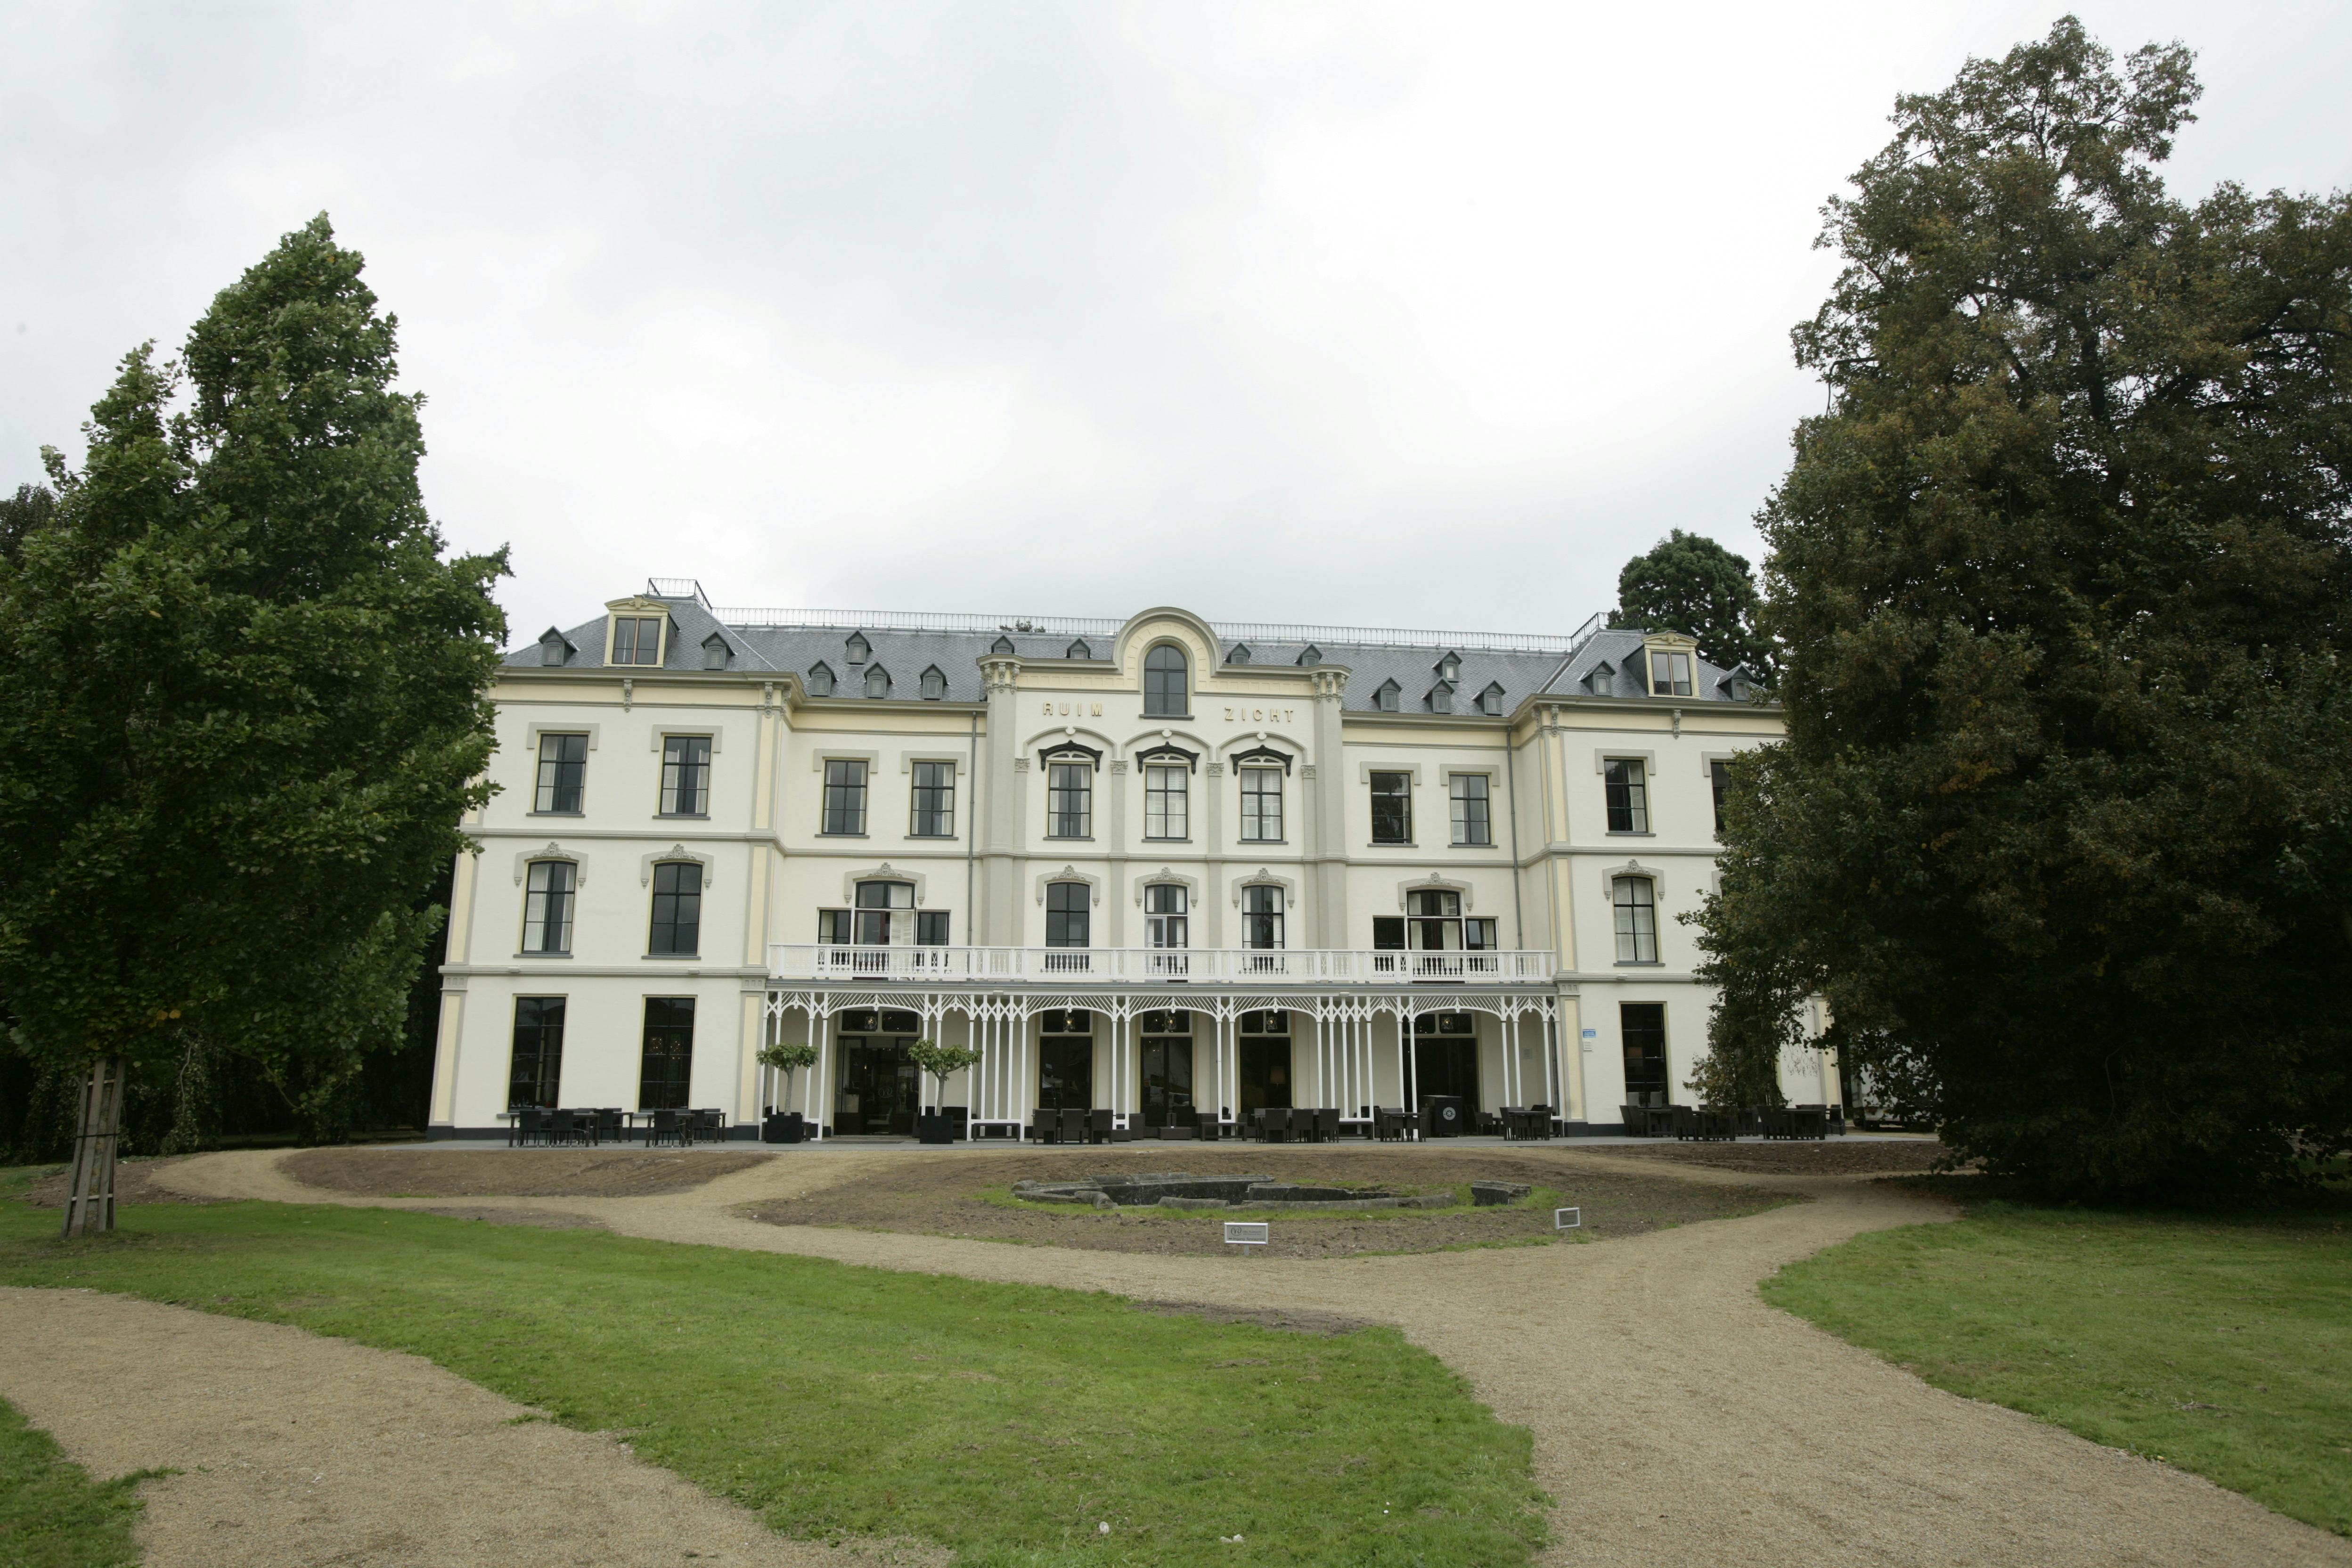 Hotel Villa Ruimzicht, Doetinchem. 